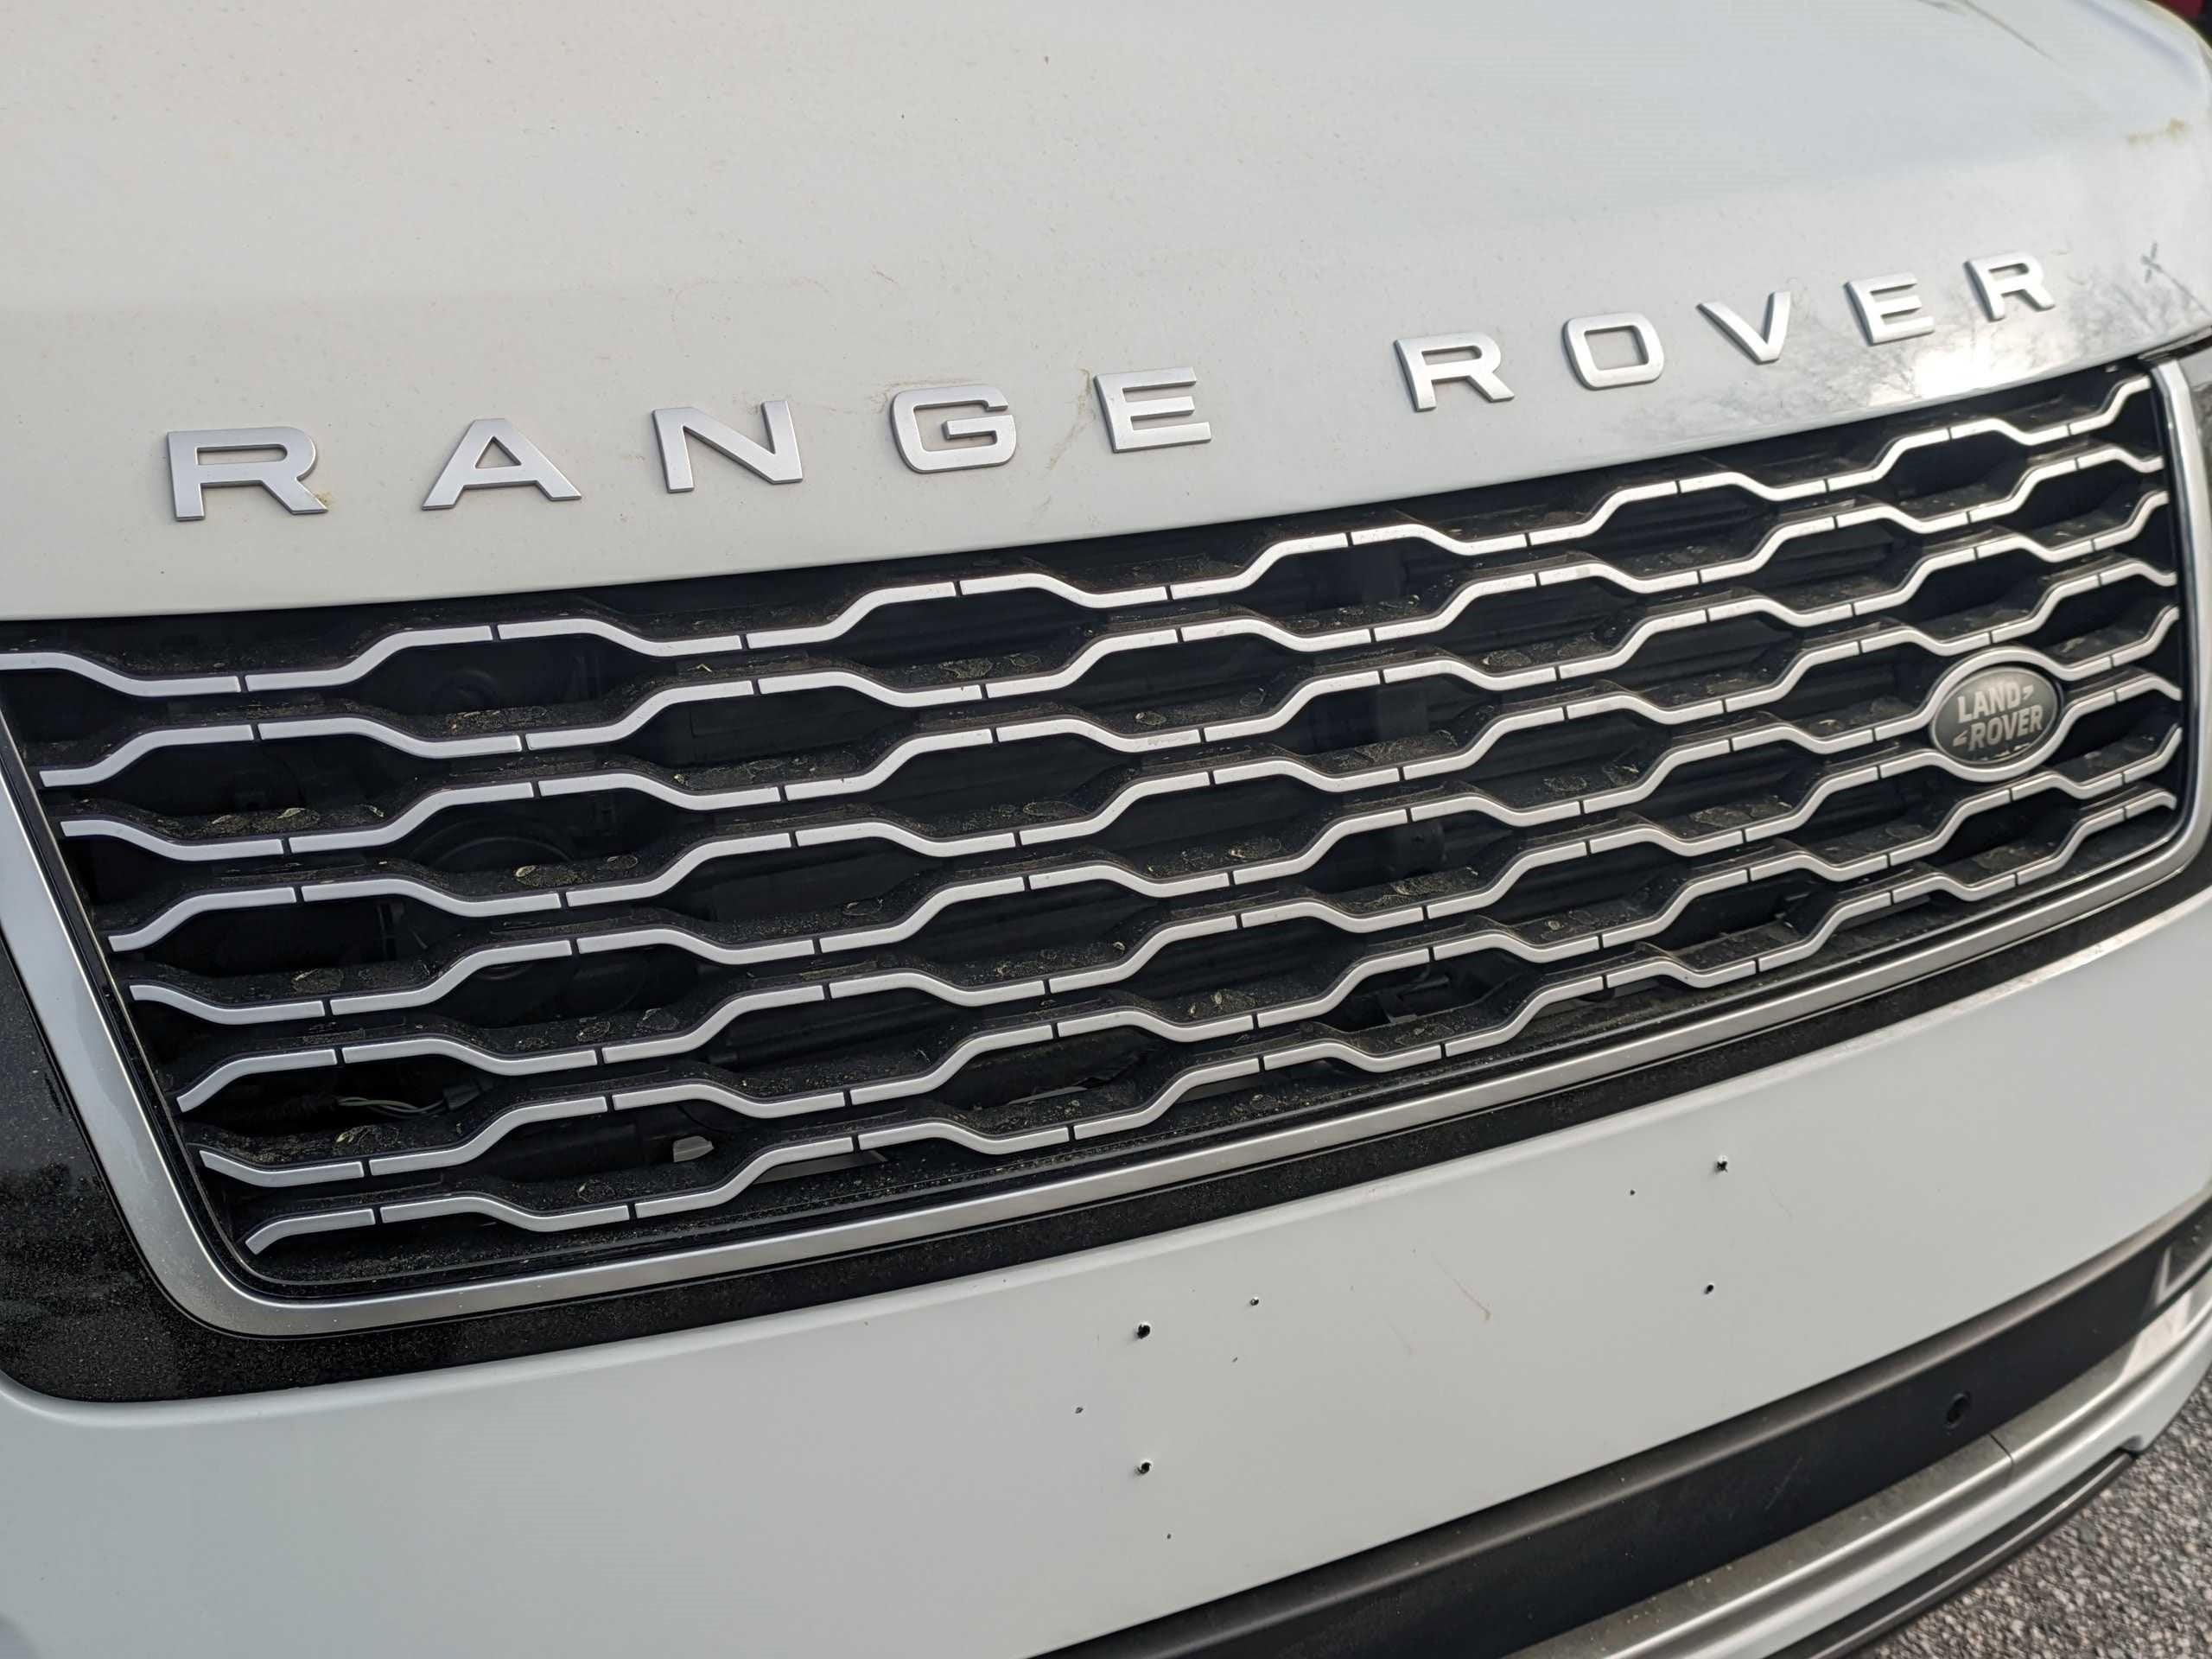 2020 Land Rover Range Rover HSE